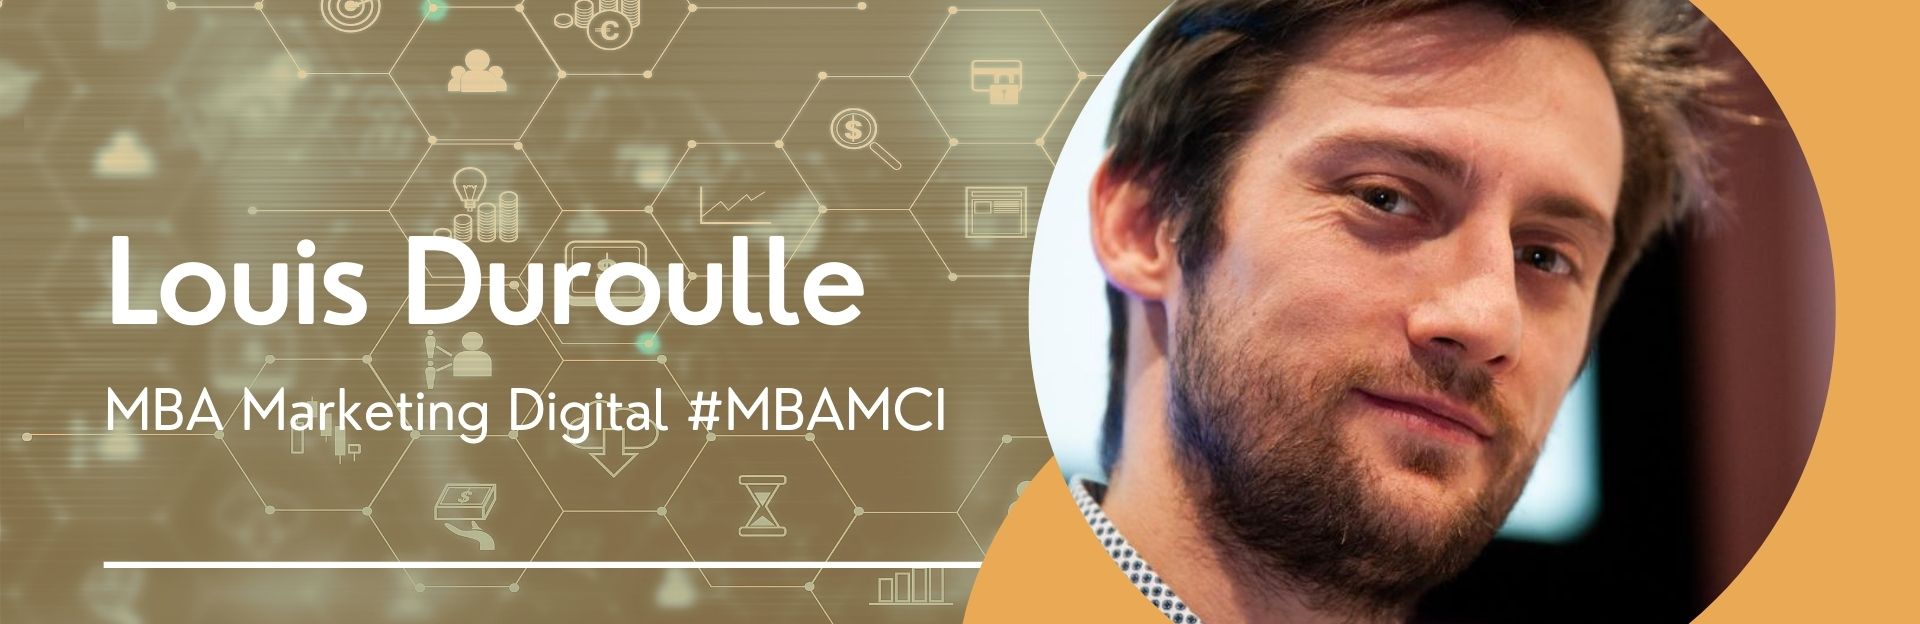 Article Entretien avec Louis Duroulle, l’expert social media du MBAMCI